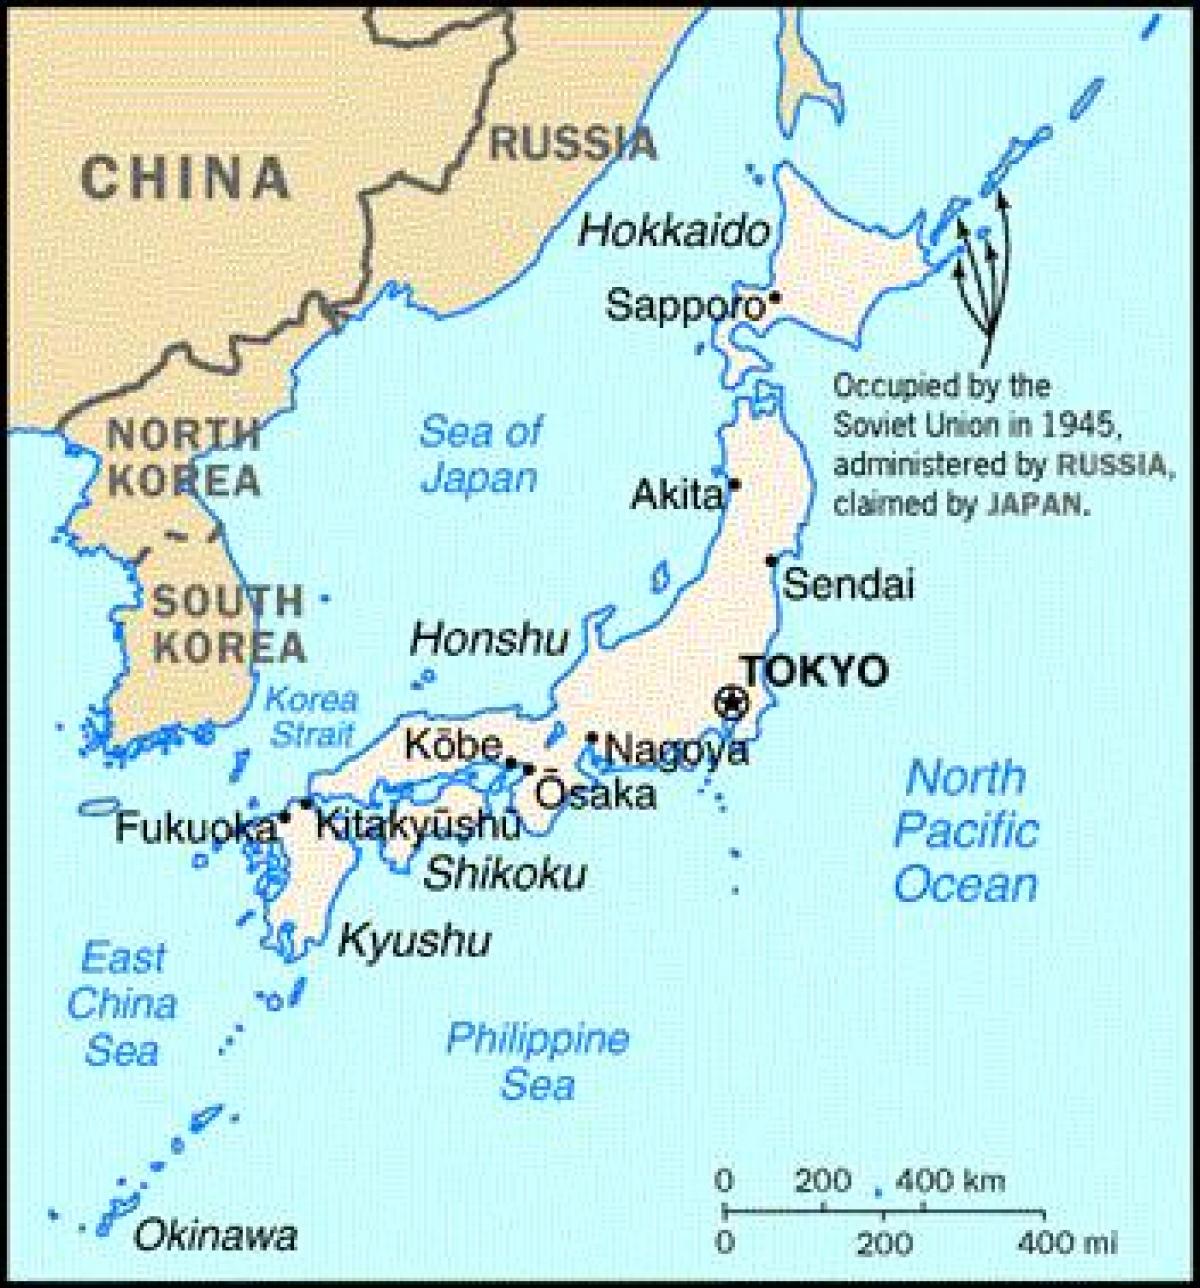 Japonii i innych krajów mapie